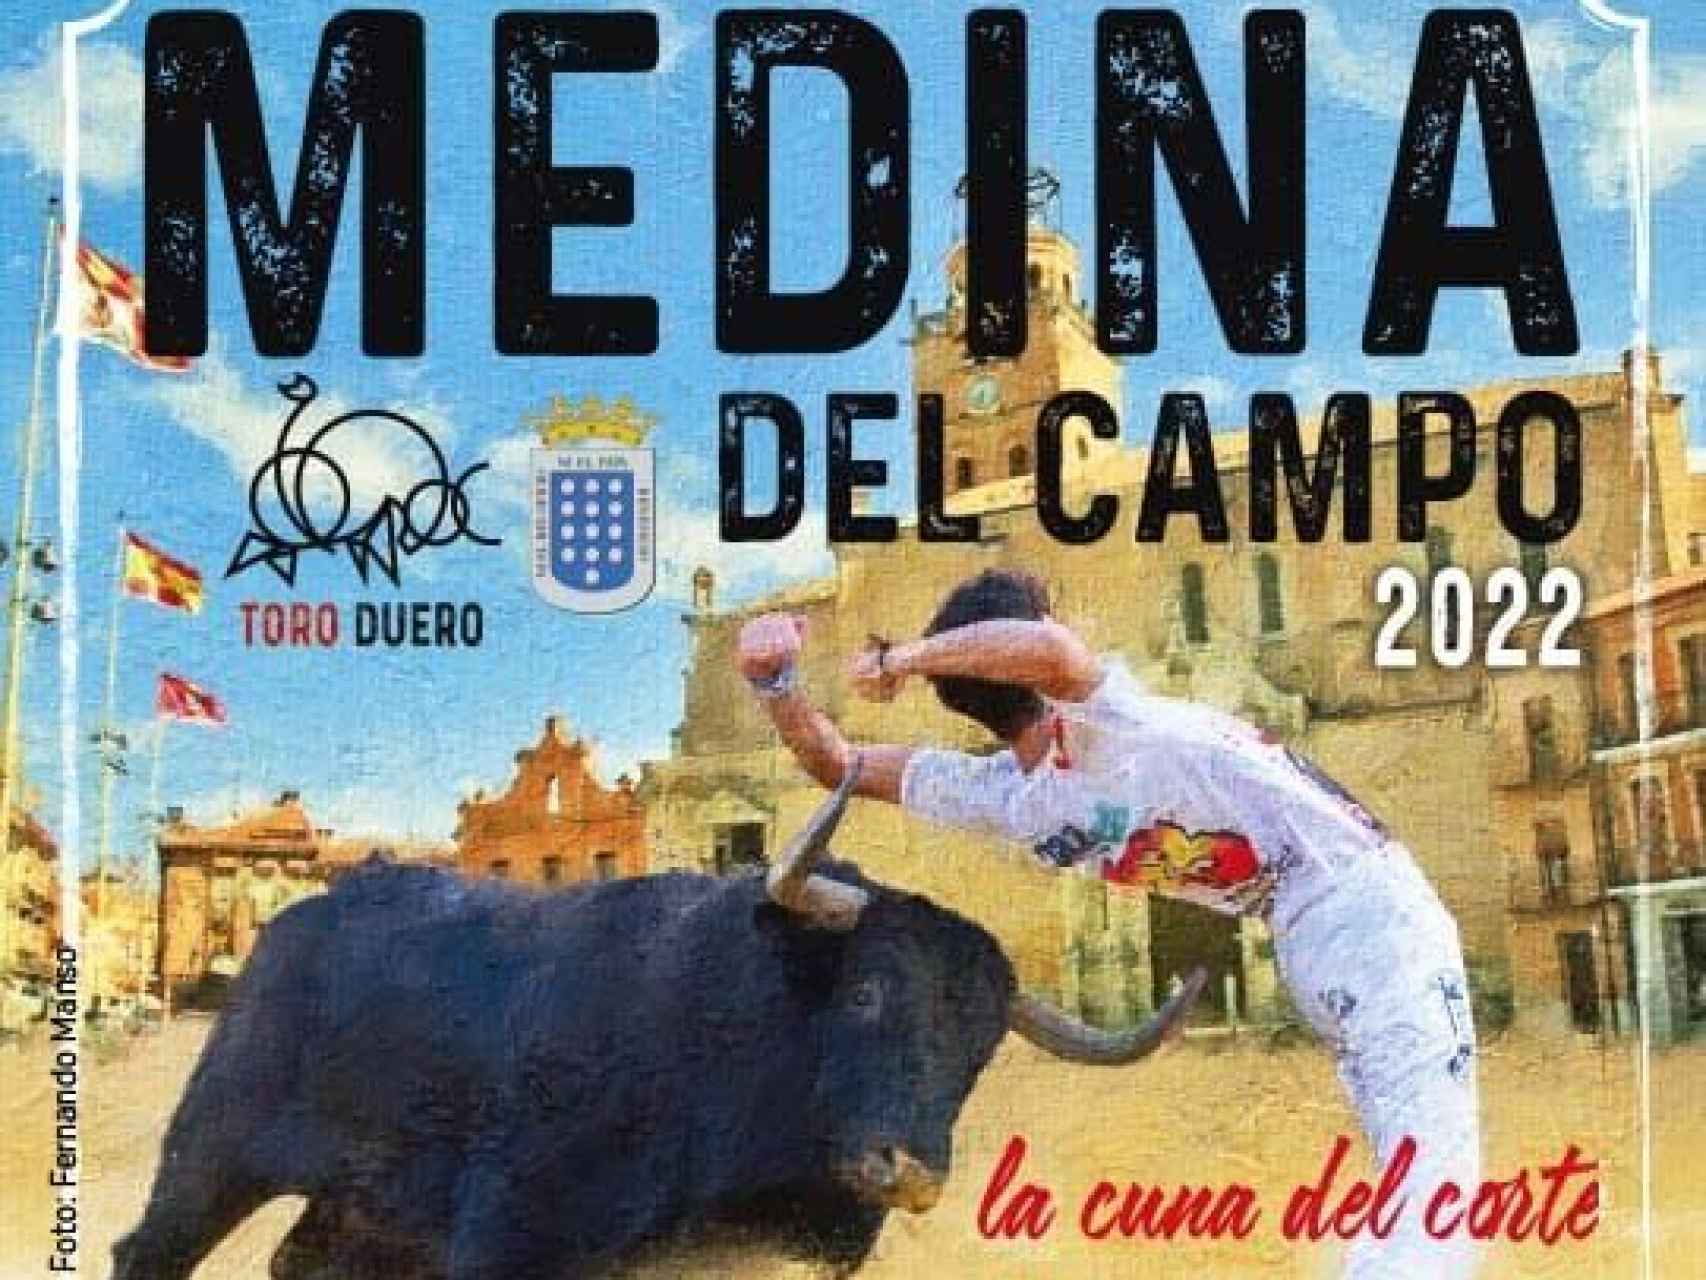 Vuelve el Concurso Nacional de Cortes a Medina del Campo